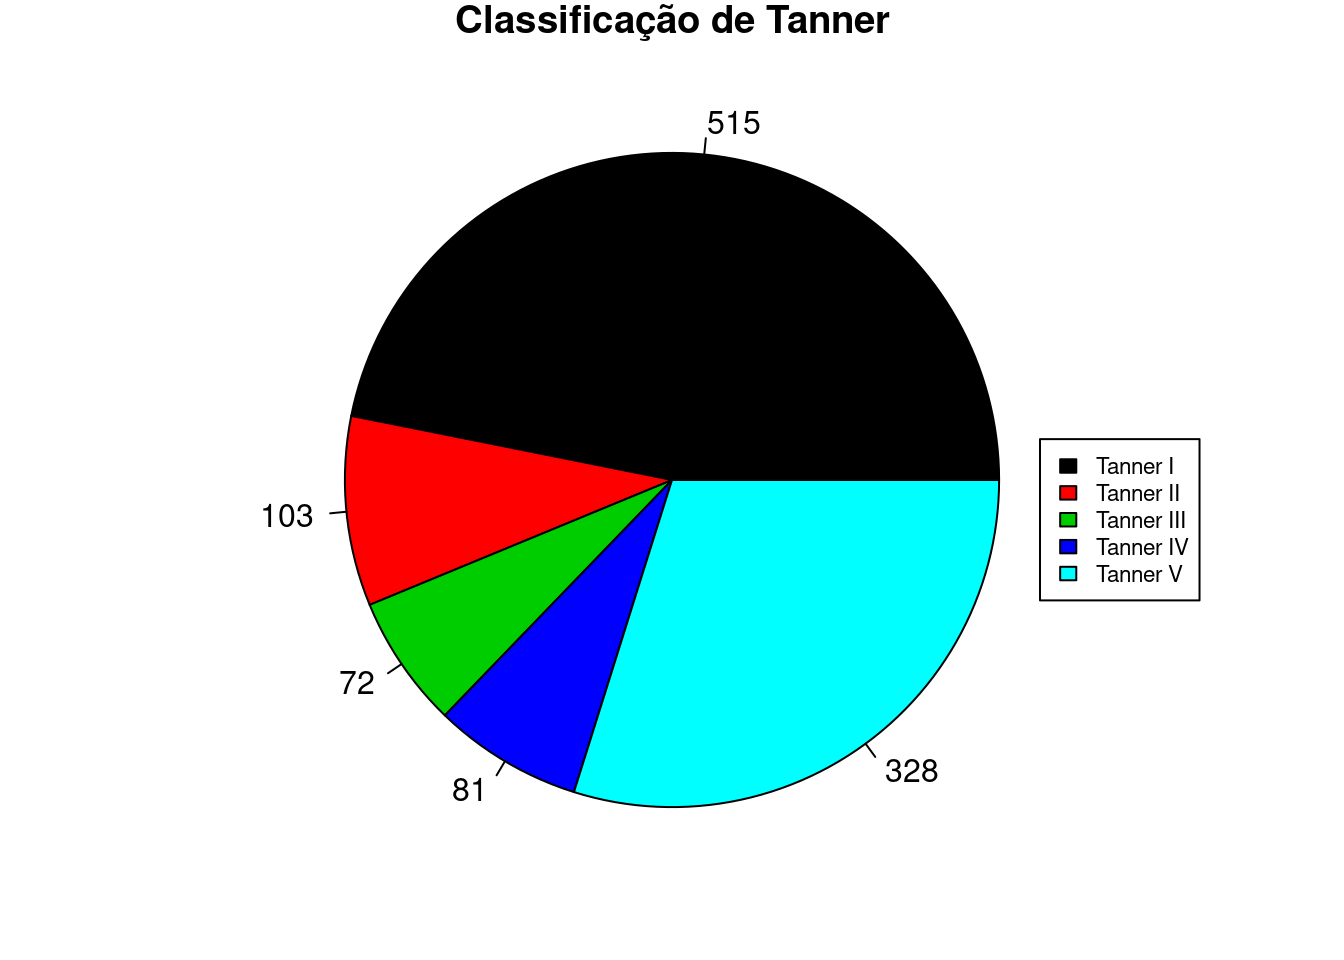 Diagrama de setores das categorias de Tanner, com as frequências de cada categoria.